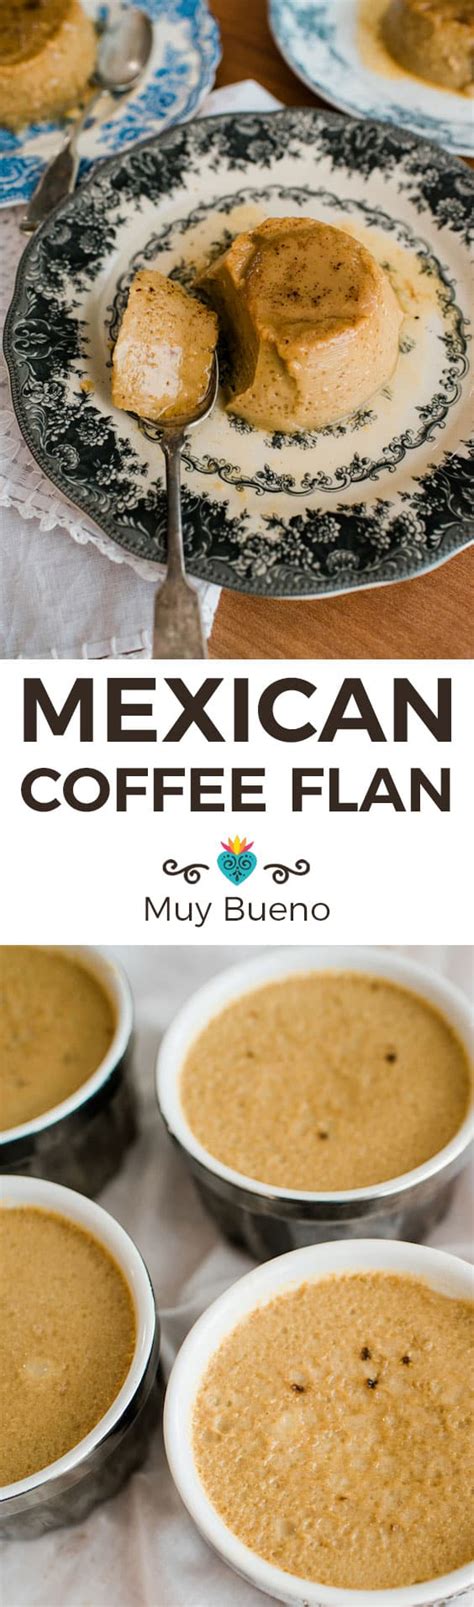 mexican-coffee-flan-flan-caf-de-olla-muy-bueno image